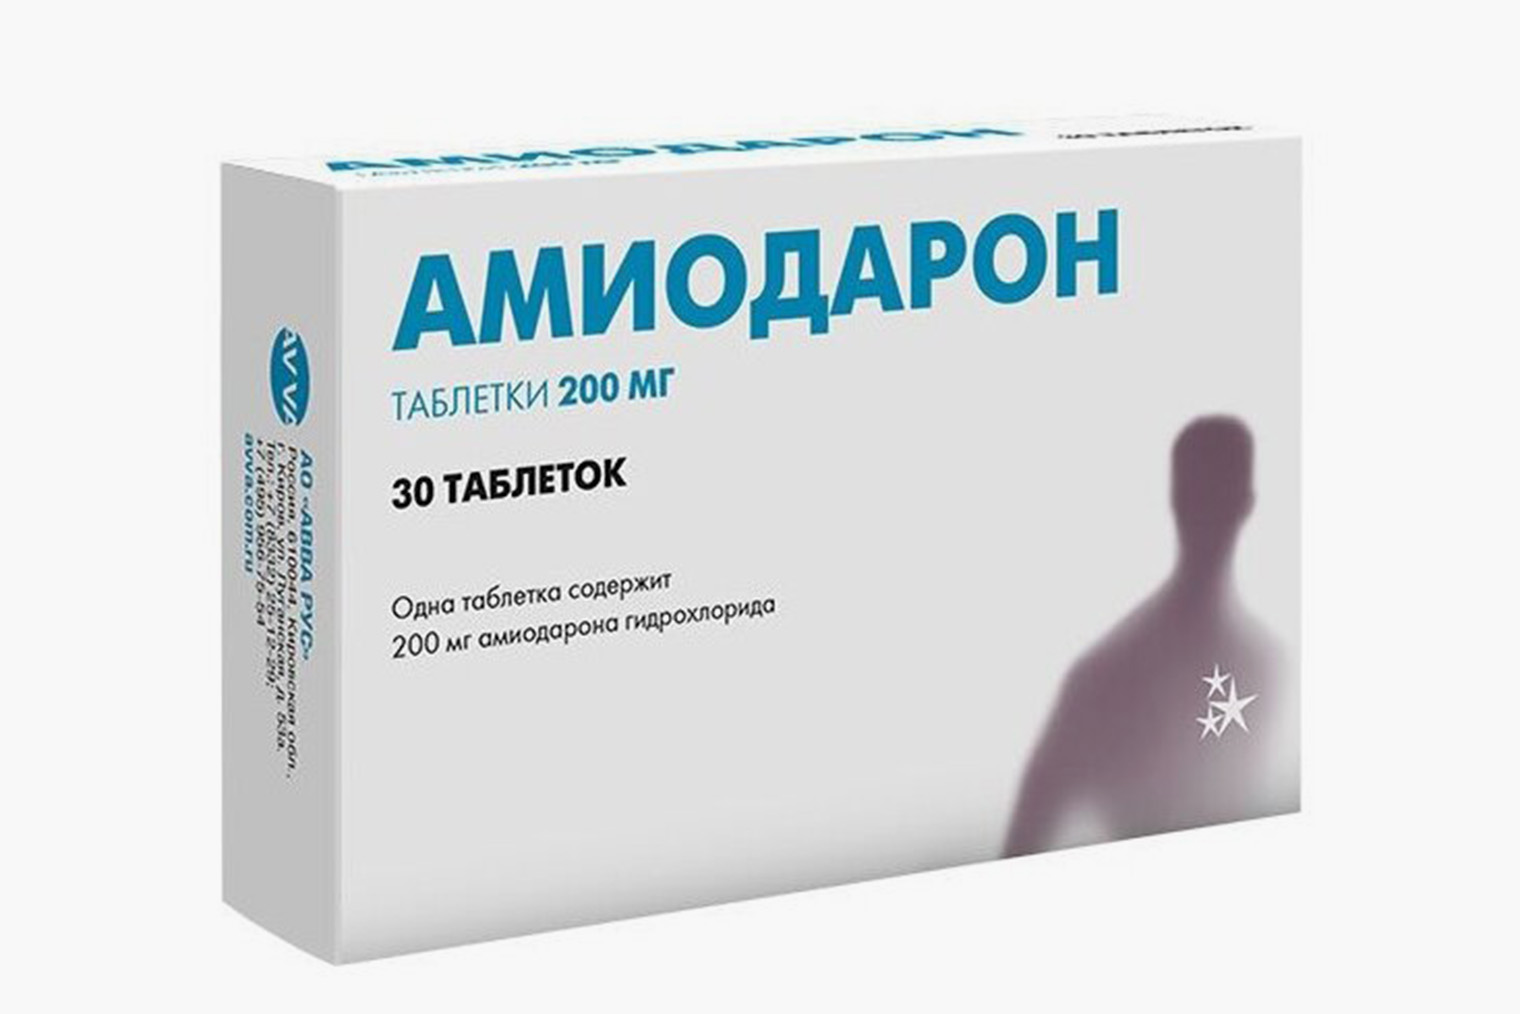 Стоимость 30 таблеток амиодарона начинается от 96 ₽